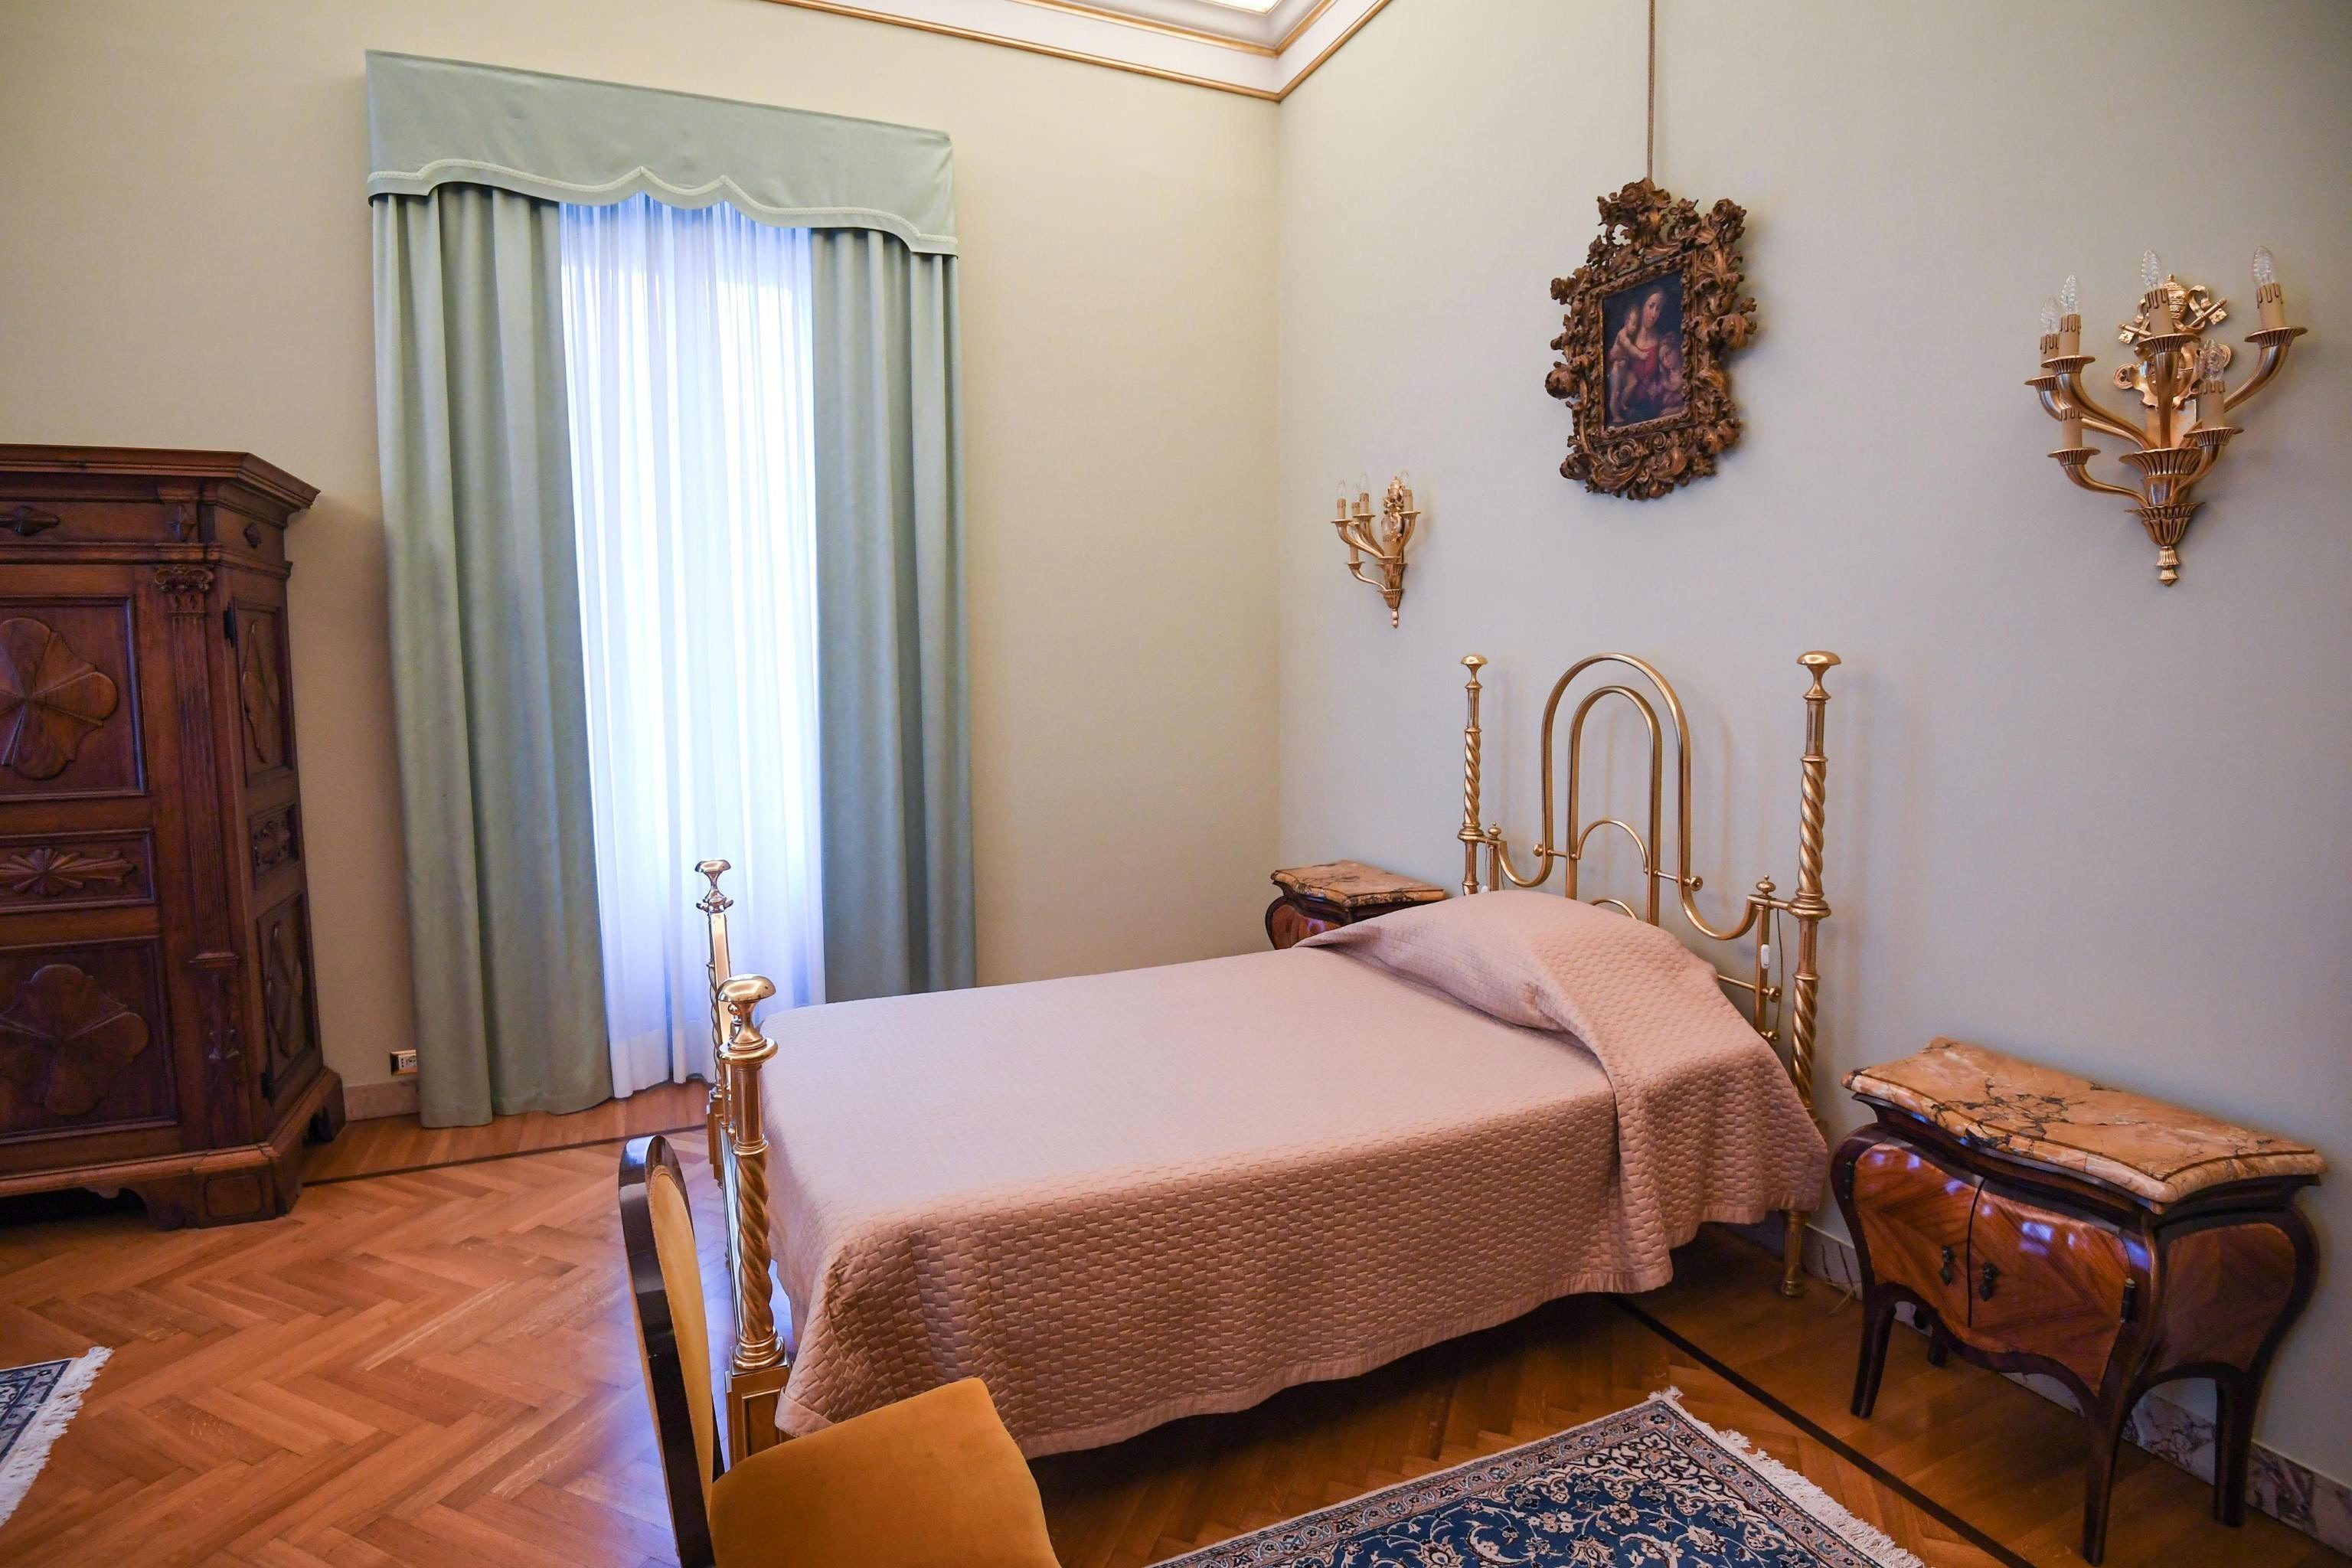 Vista del dormitorio del Papa en el Palacio Apostólico de Castel Gandolfo. Foto: EFE/Alessandro Di Meo.